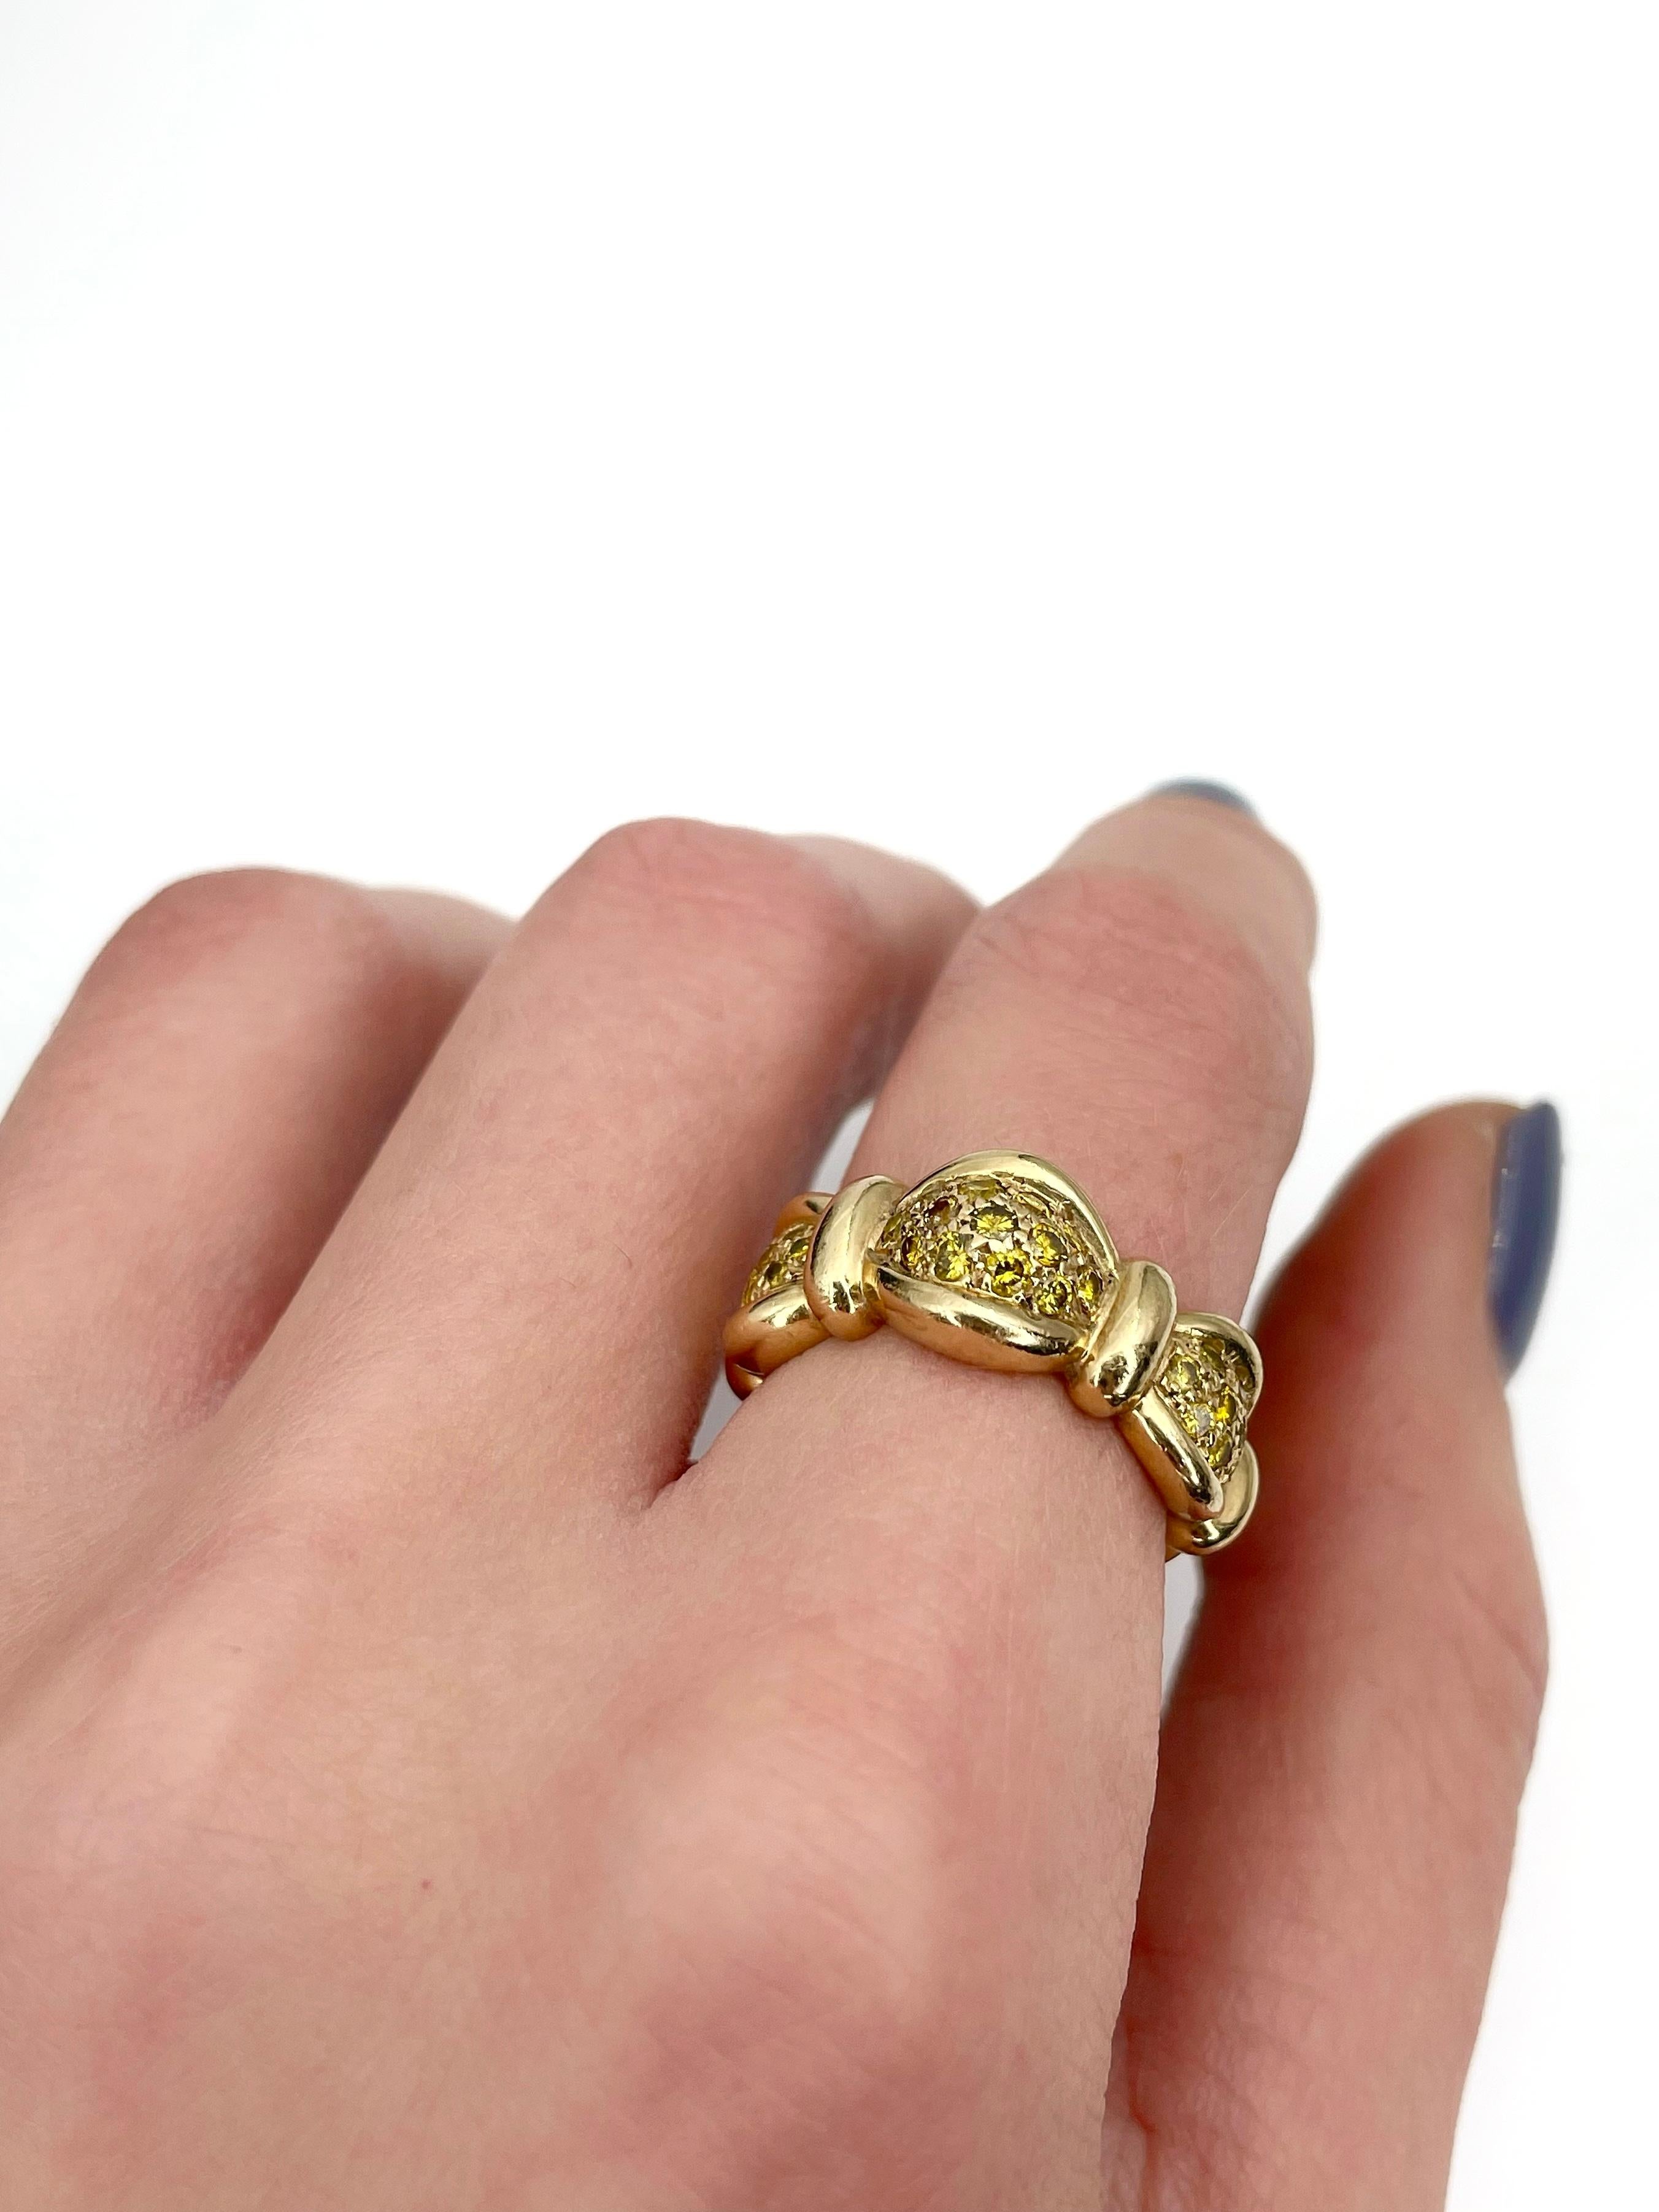 Women's Modern 14 Karat Gold 0.65 Carat Fancy Yellow Diamond Band Ring